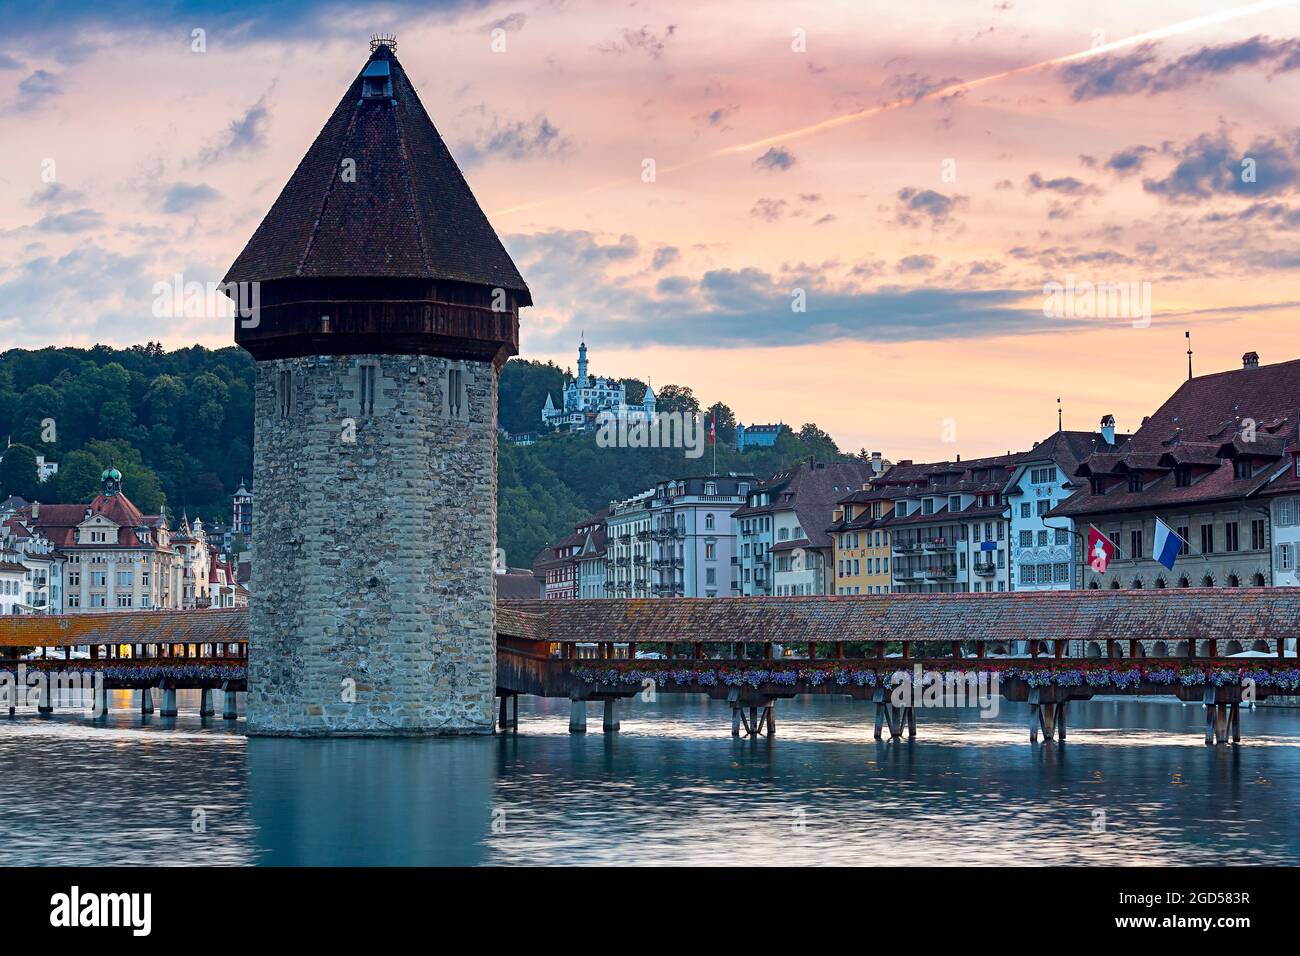 Panoramablick auf die Kapelle, Kapellbrücke, Wasserturm im Laternenlicht  bei Sonnenaufgang. Luzern. Schweiz Stockfotografie - Alamy